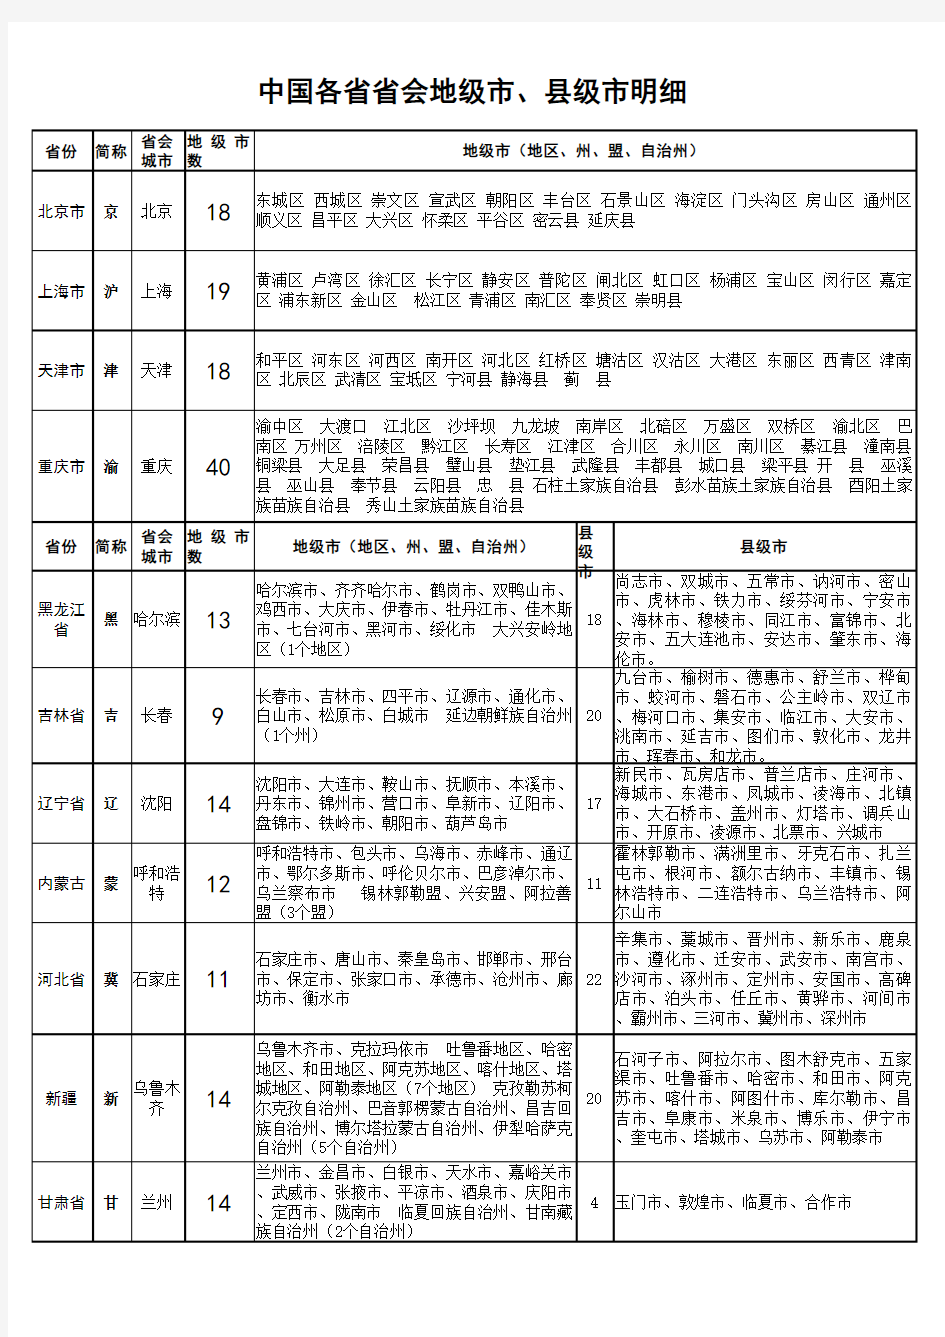 2018最新中国各省省会-地级市-县级市列表